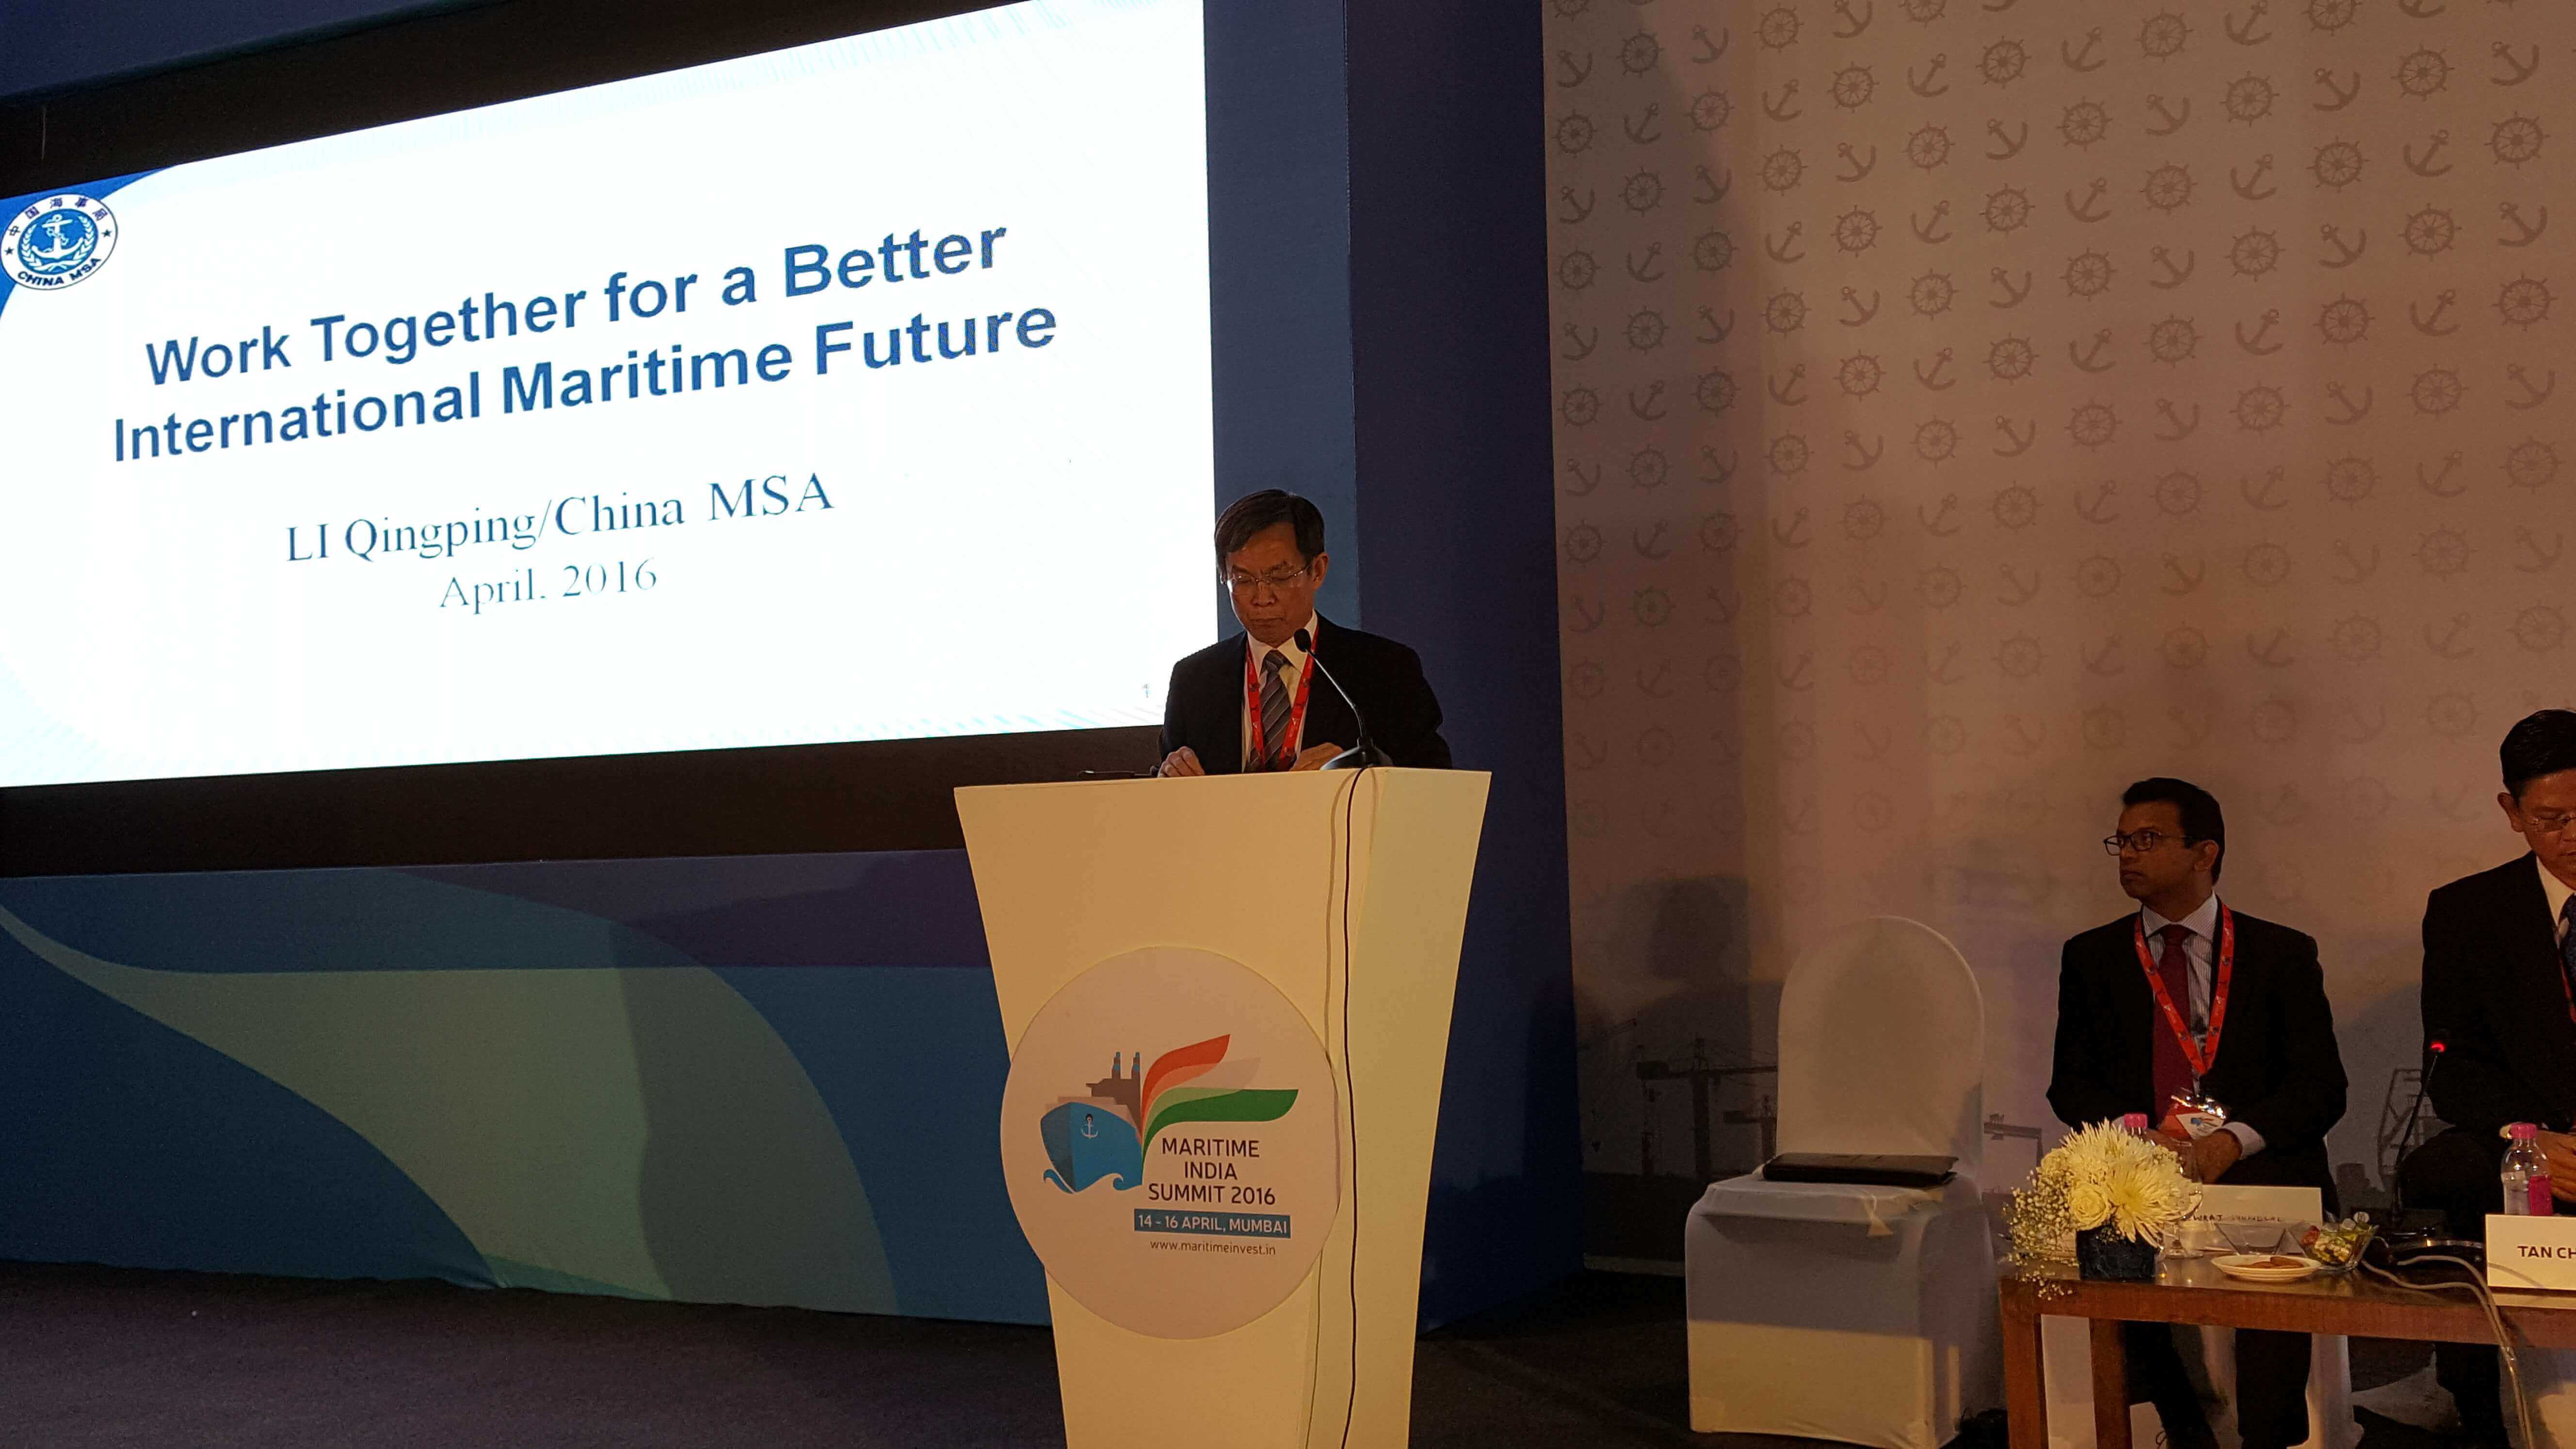 China MSA attends Maritime India Summit 2016